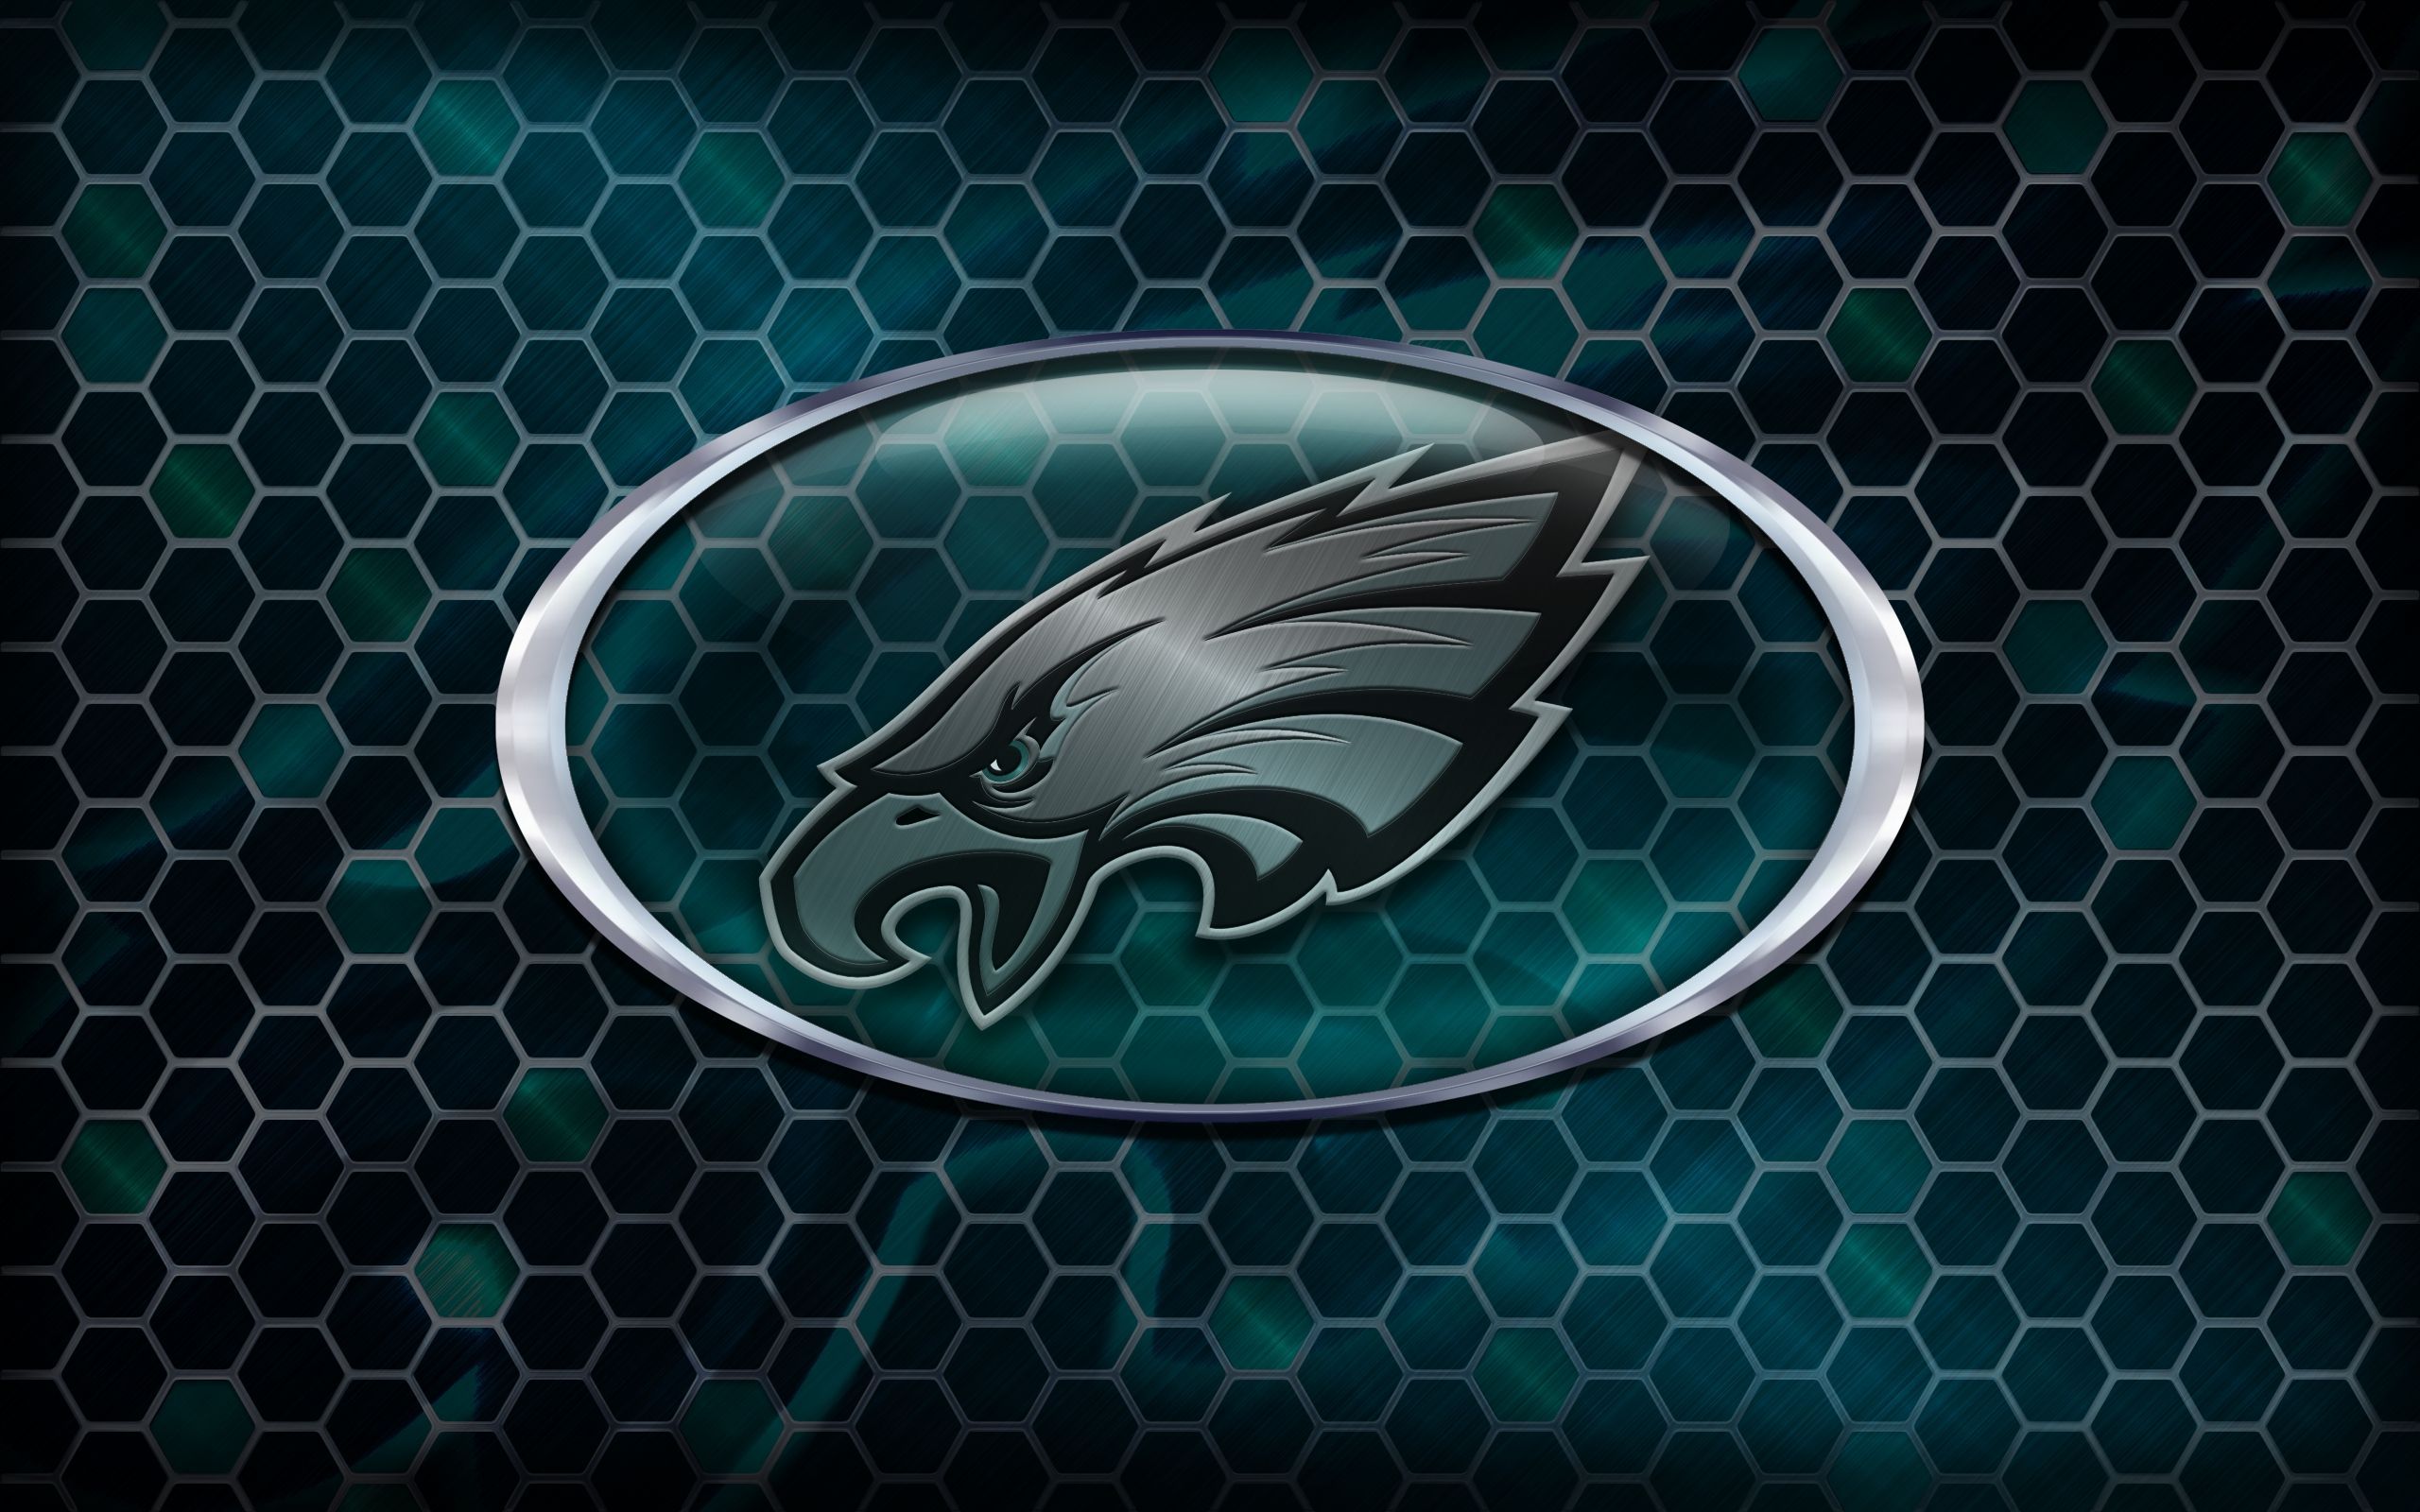 Philadelphia Eagles 2014 NFL Logo Wallpaper